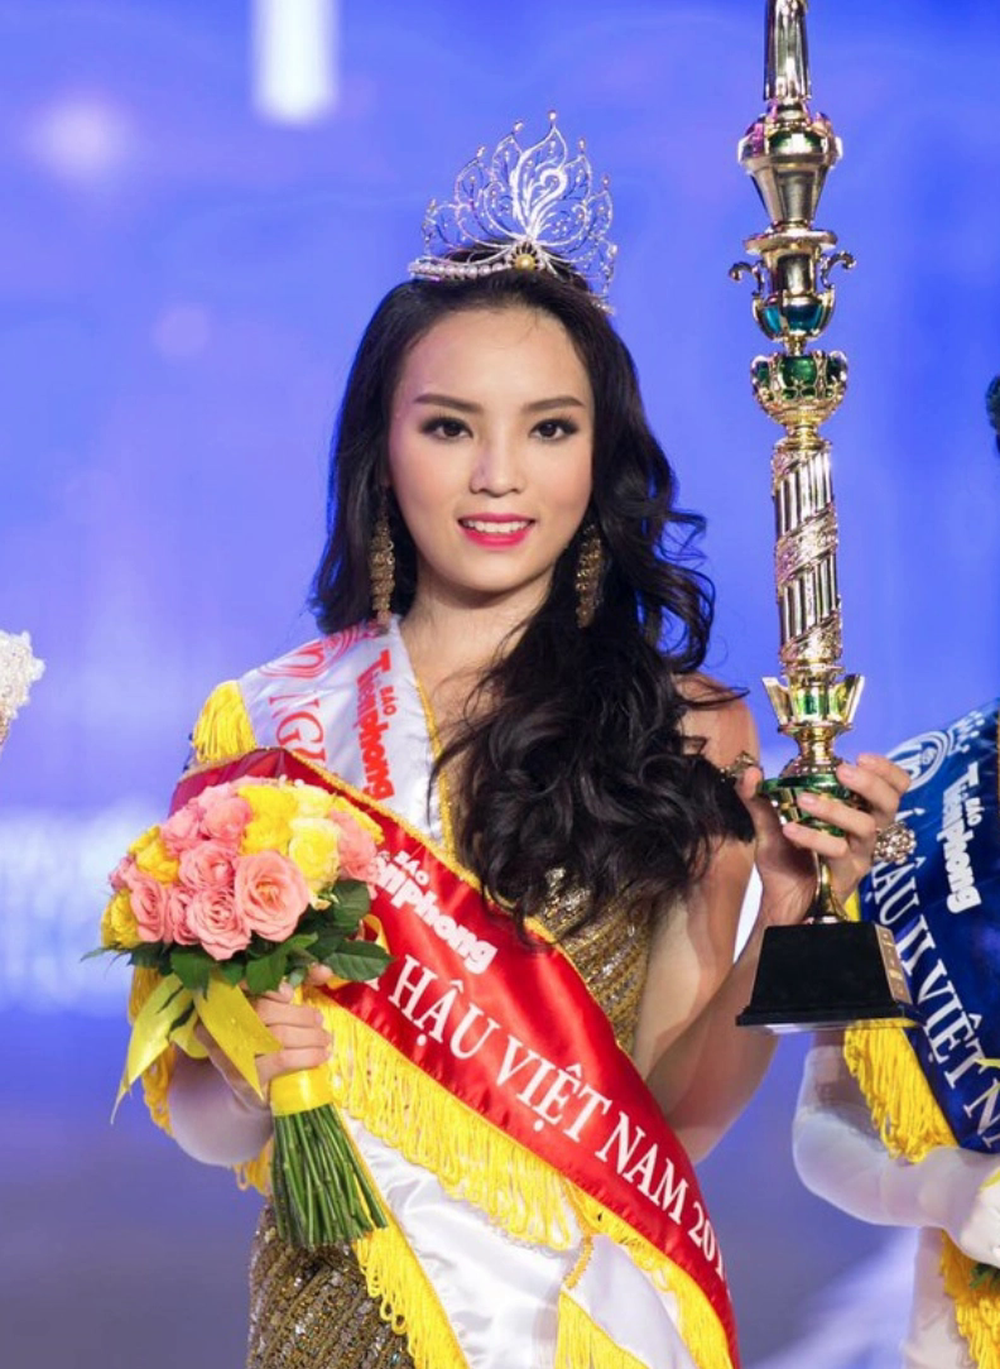  Kỳ Duyên trải lòng về loạt scandal sau khi đăng quang: Những chuyện đó là không đúng với một Hoa hậu Việt Nam - Ảnh 3.